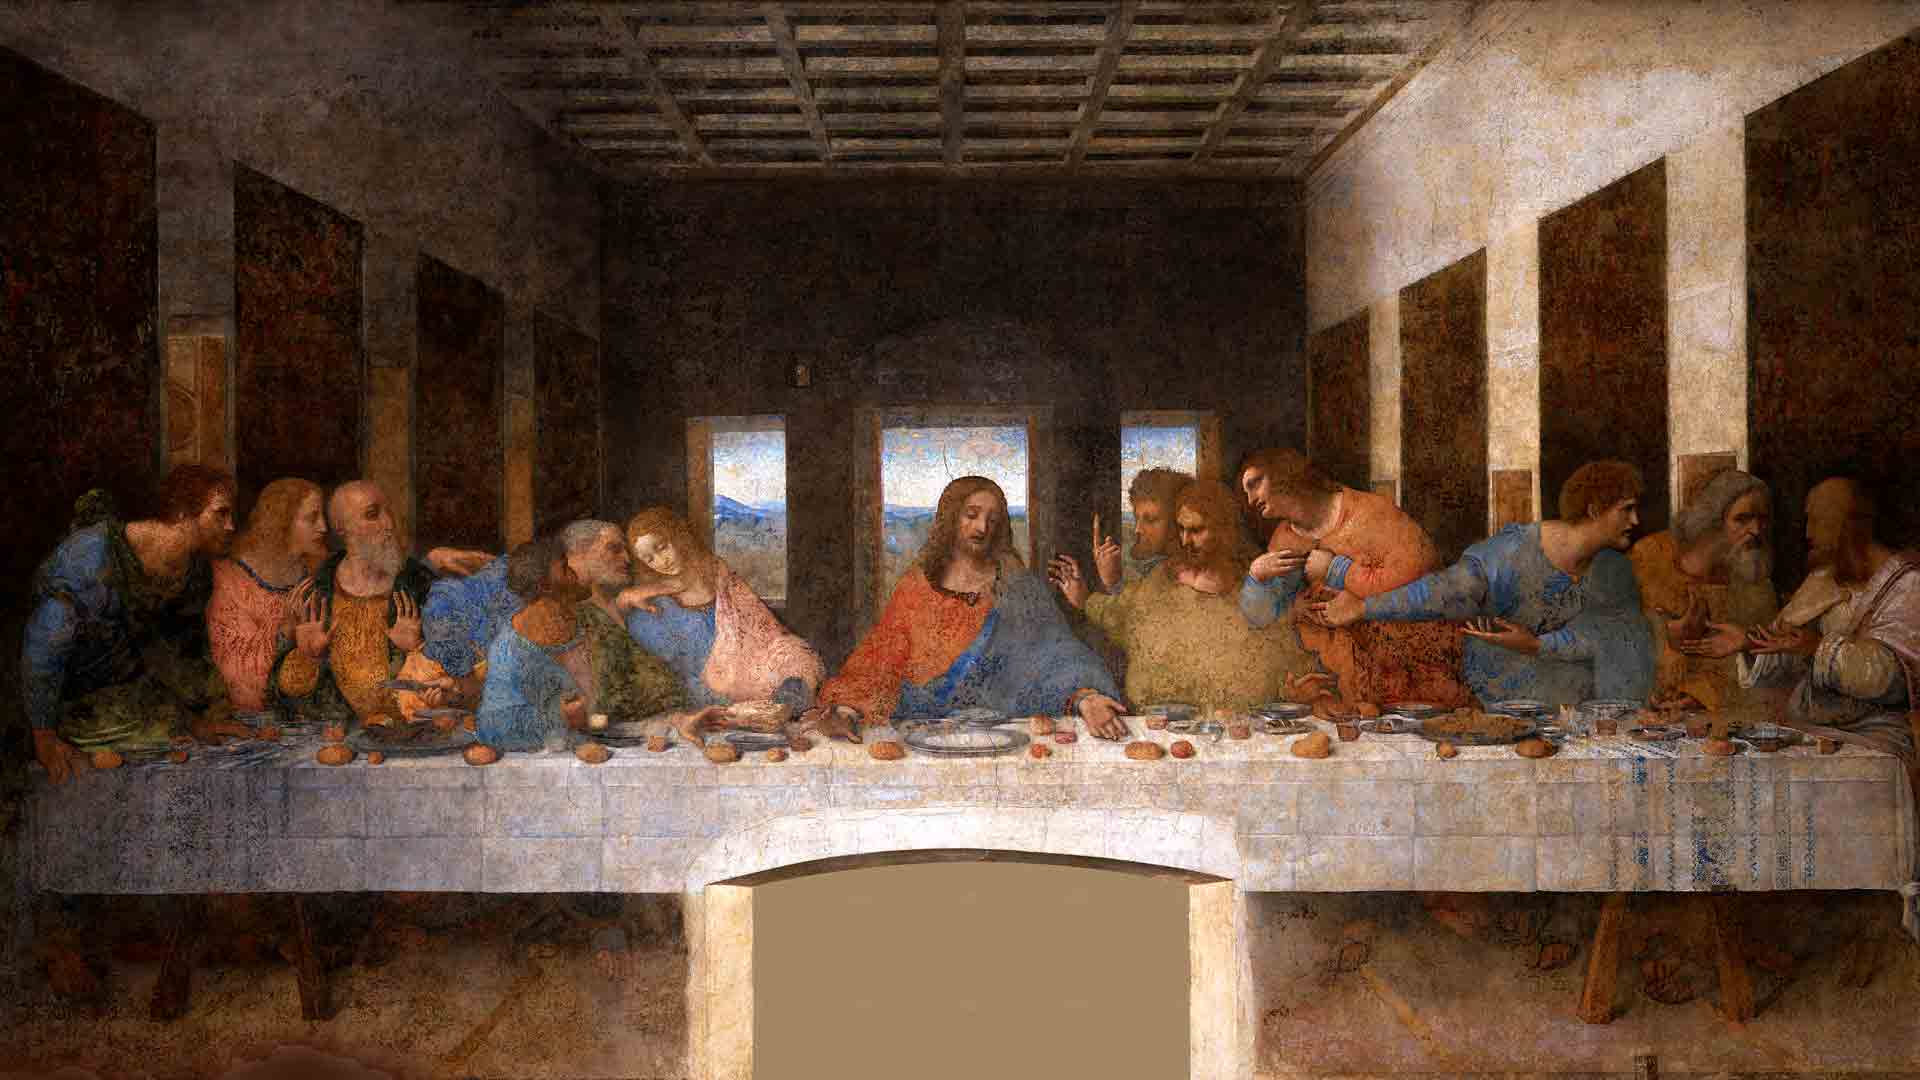 The Last Supper by Leonardo da Vinci at the Santa Maria delle Grazie in Milan, Italy (CC0 1.0)